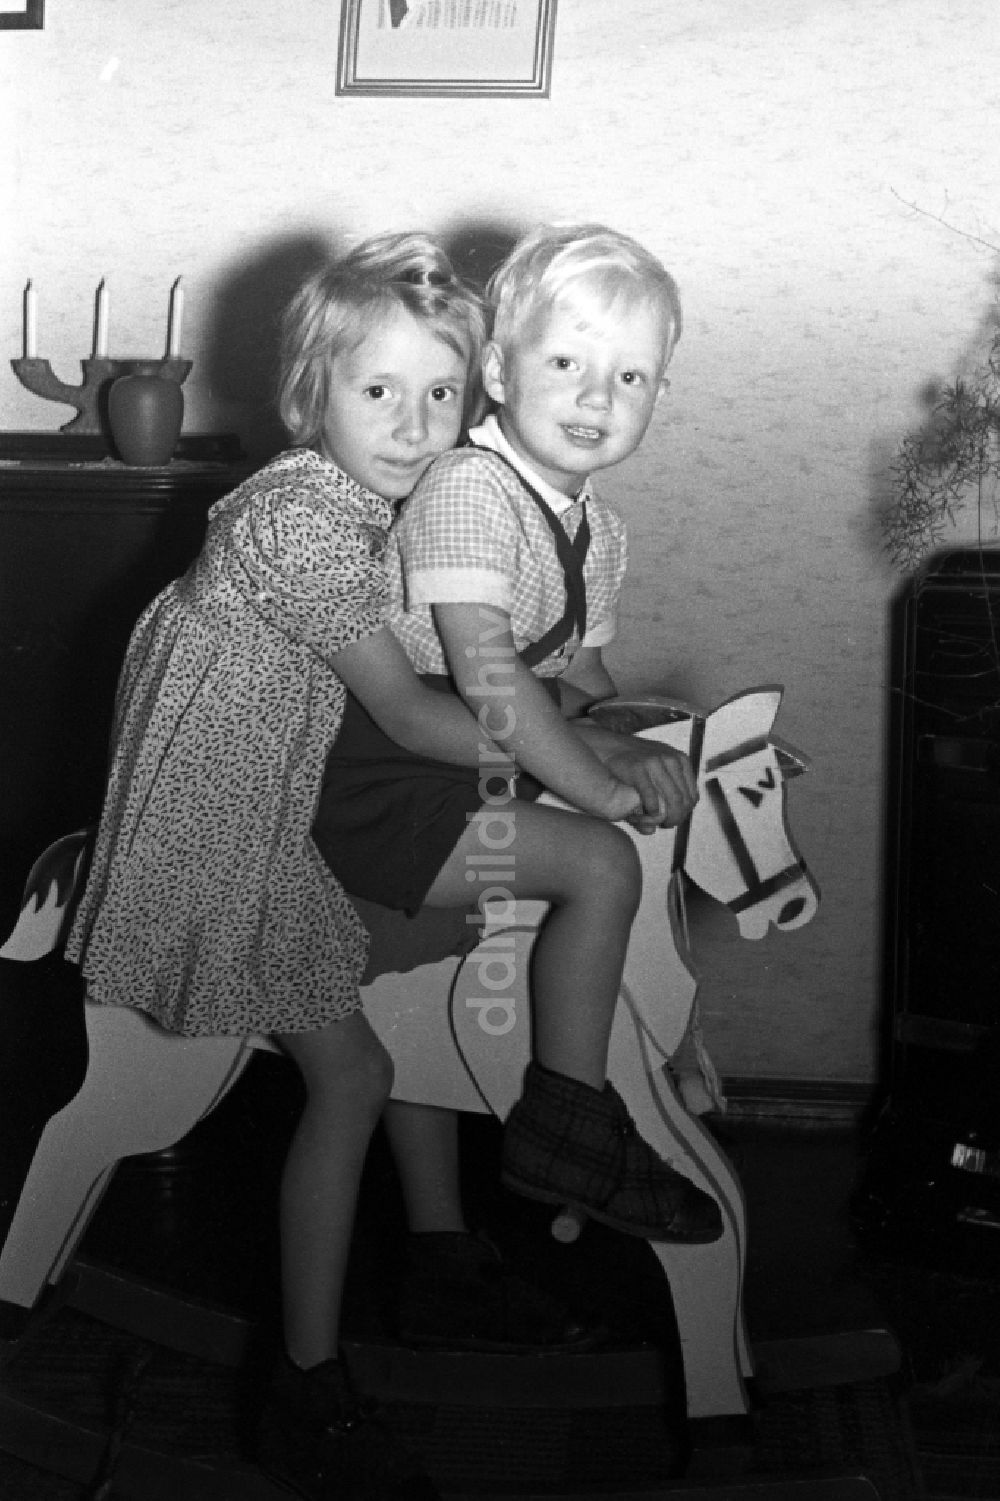 DDR-Fotoarchiv: Merseburg - Zwei Kinder auf einem Schaukelpferd in Merseburg in Sachsen-Anhalt in Deutschland